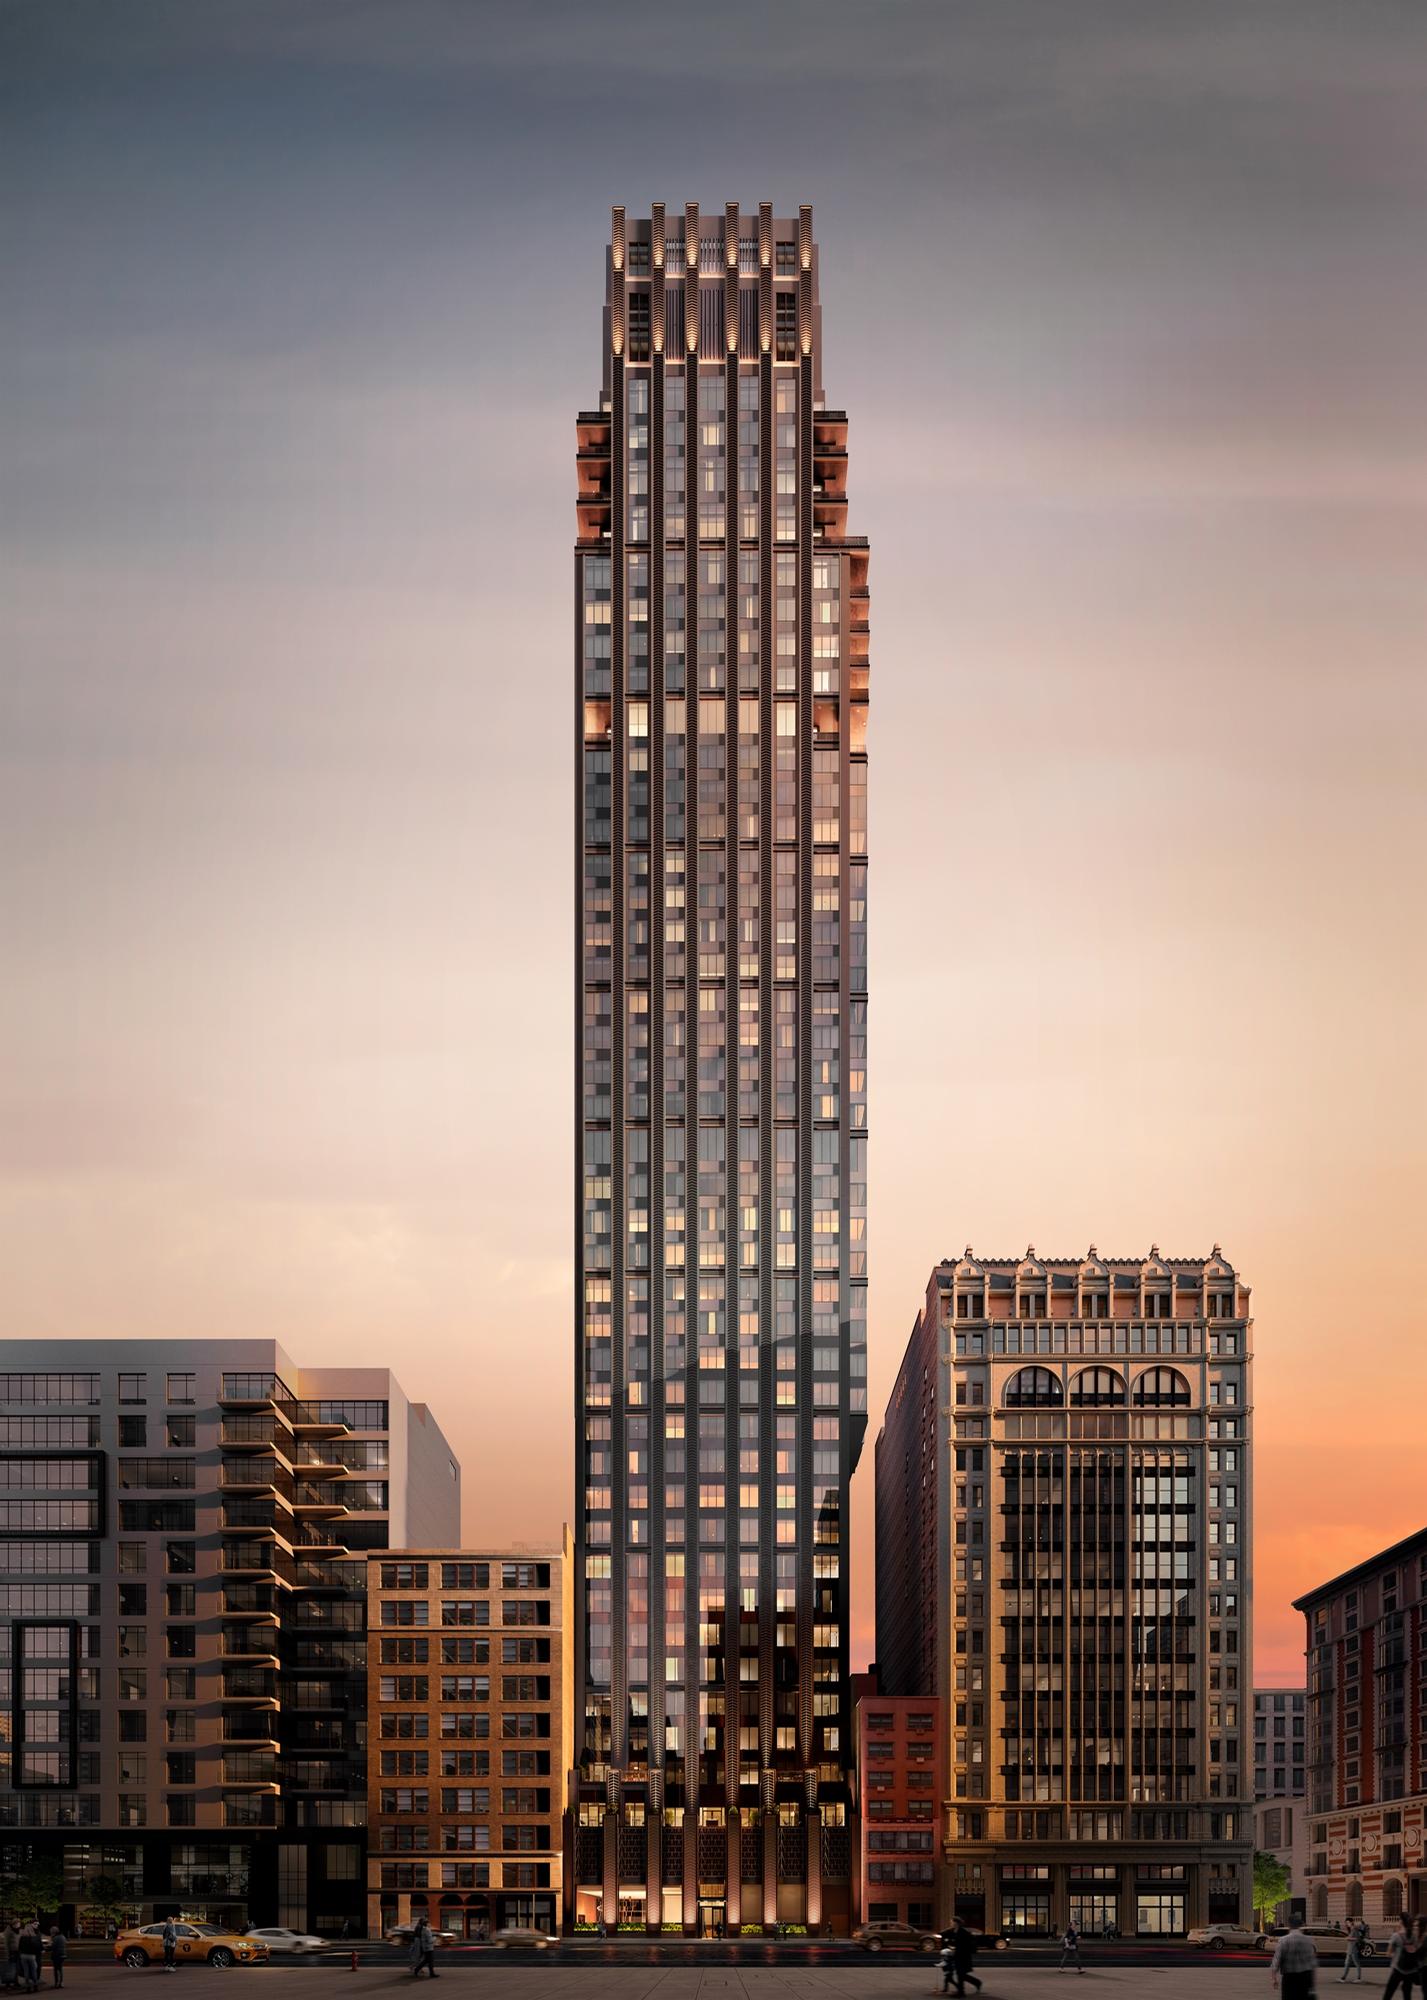 The tower will house 123 residences across 45 floors / Rockefeller Group